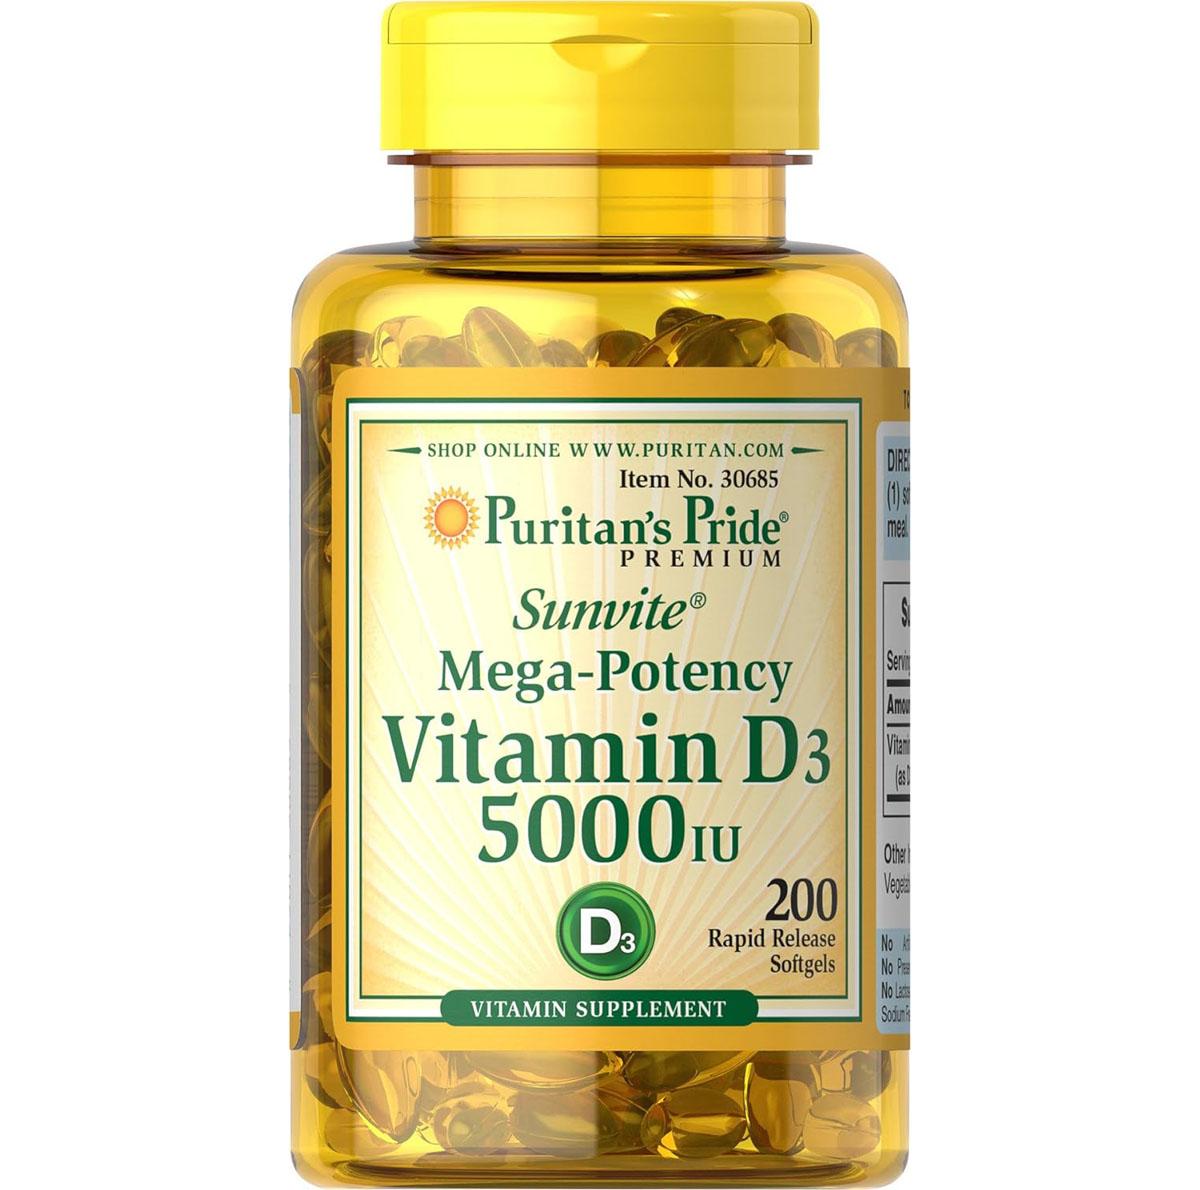 Puritans Pride Vitamin D3 5000IU Immunity Supplement for $3.50